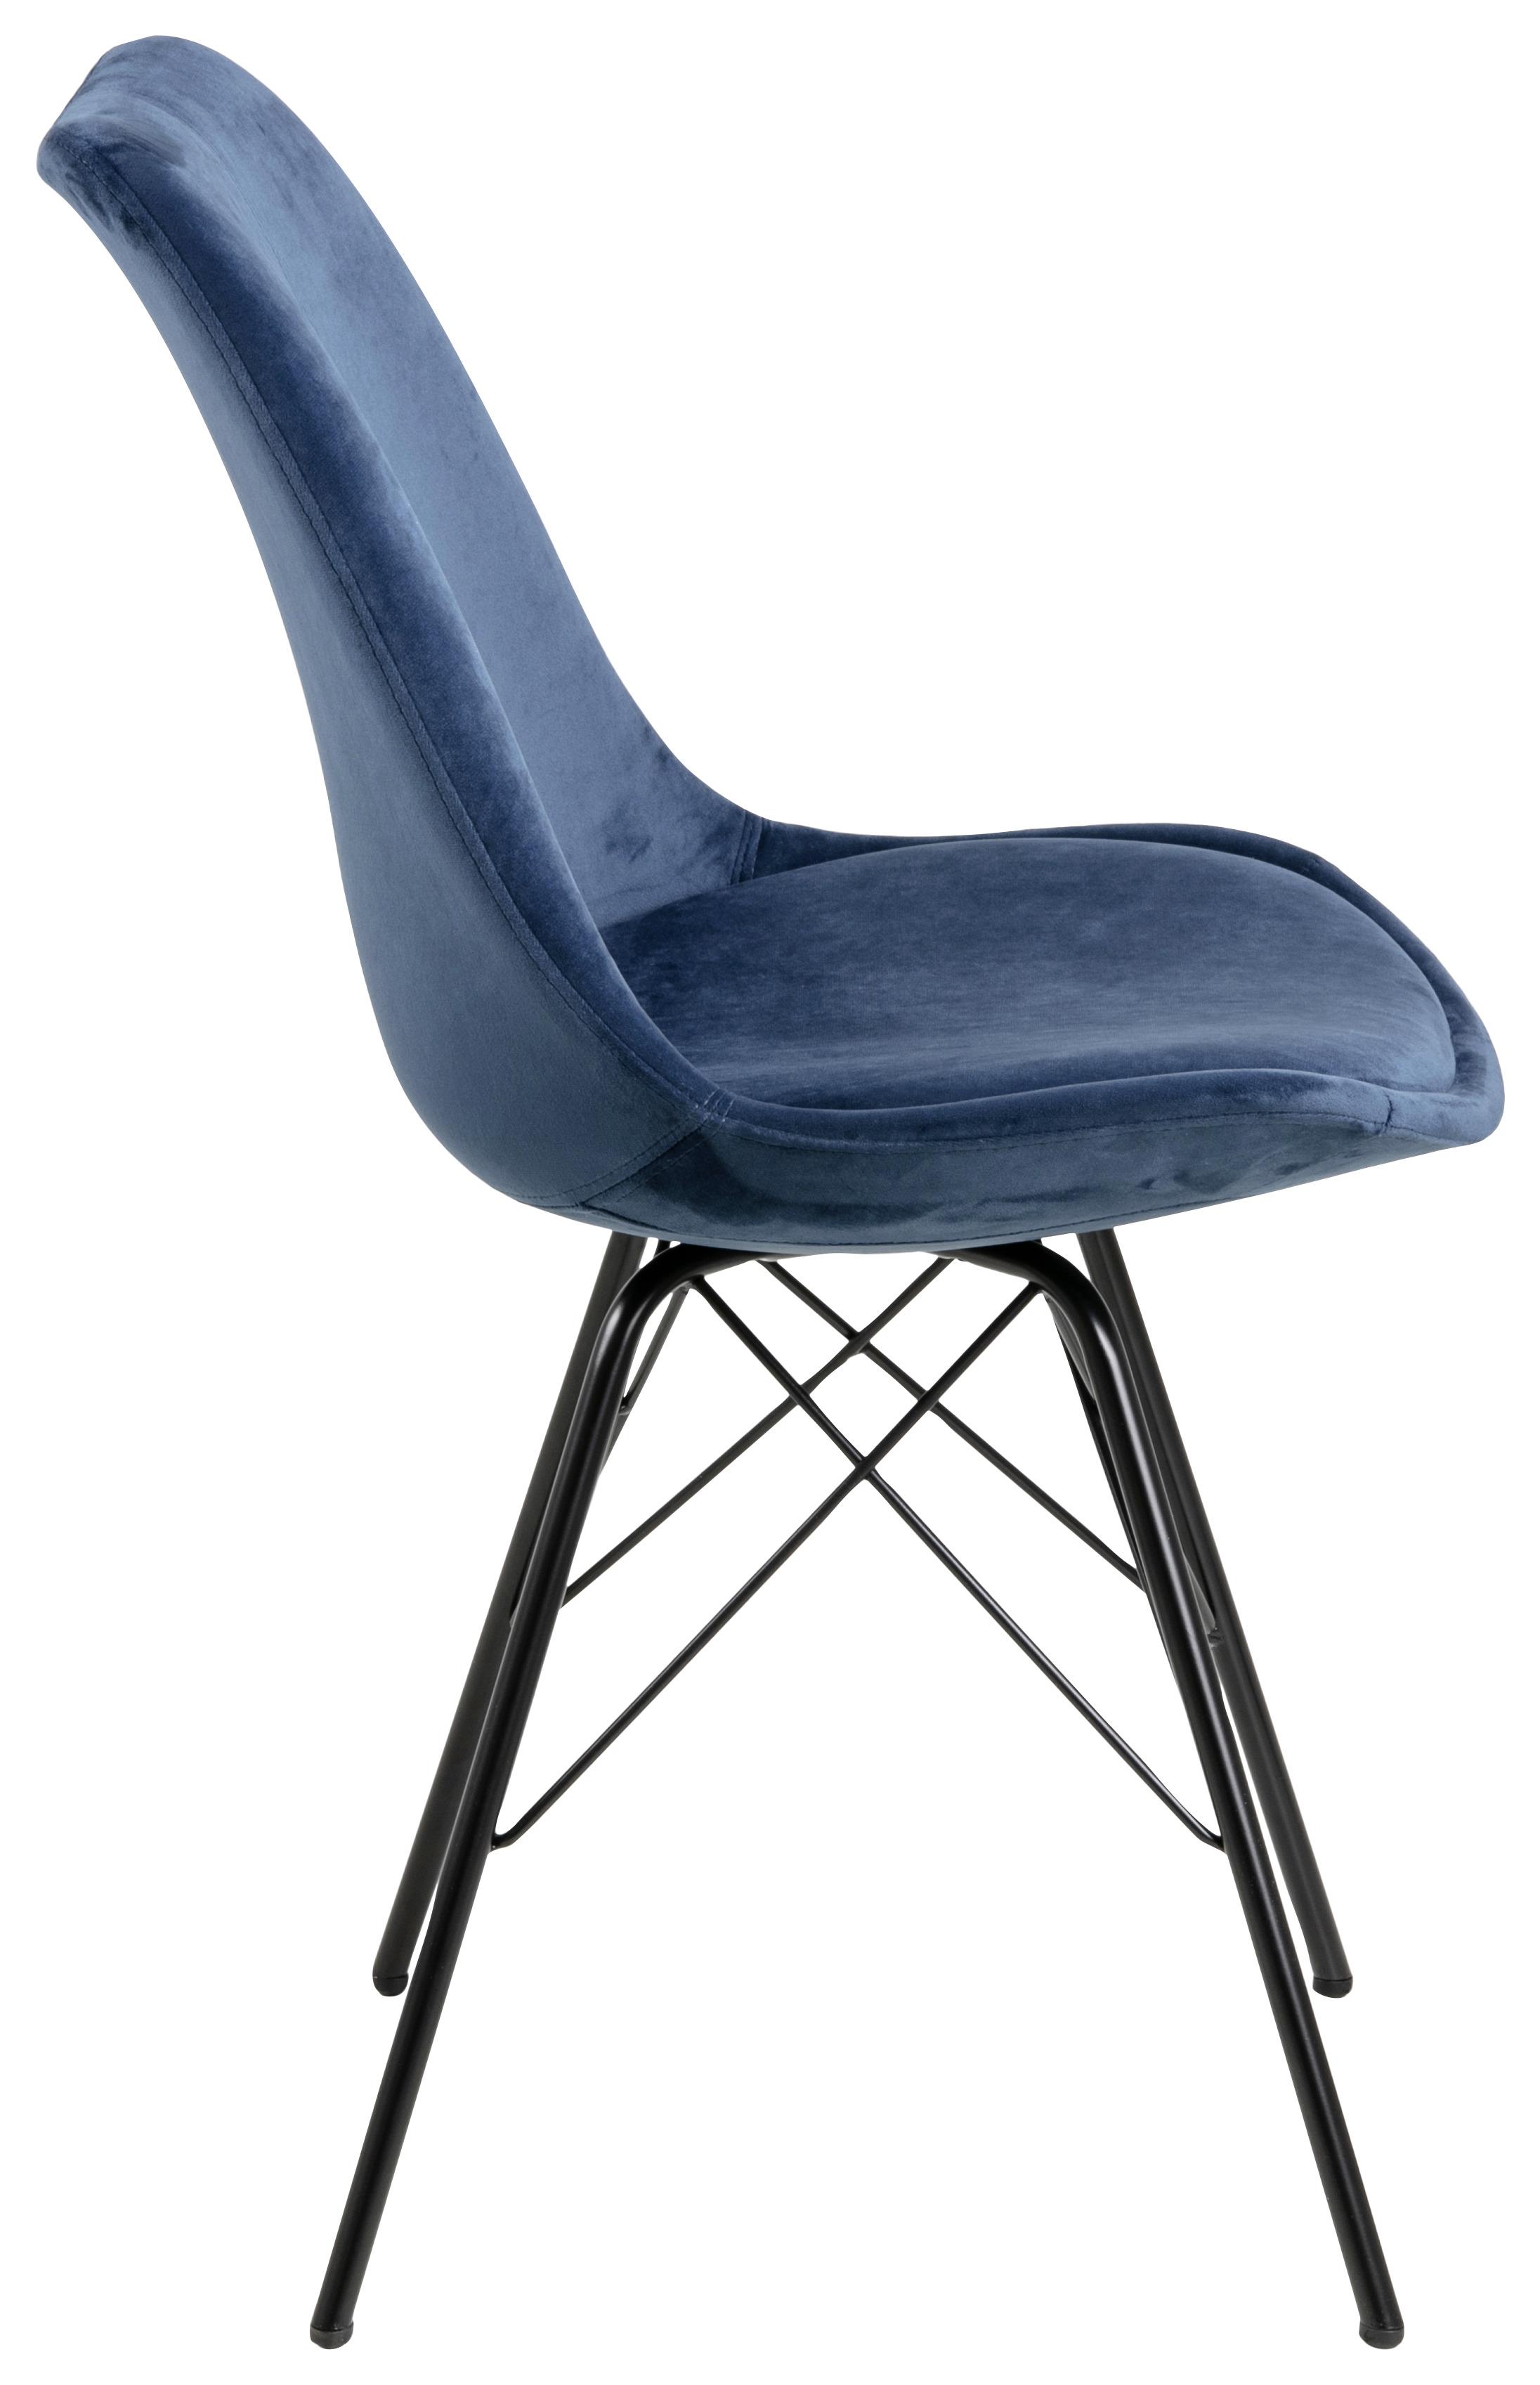 Jídelní Židle Eris Tmavě Modrá - černá/tmavě modrá, Trend, kov/textil (48,5/85,5/54cm) - Carryhome